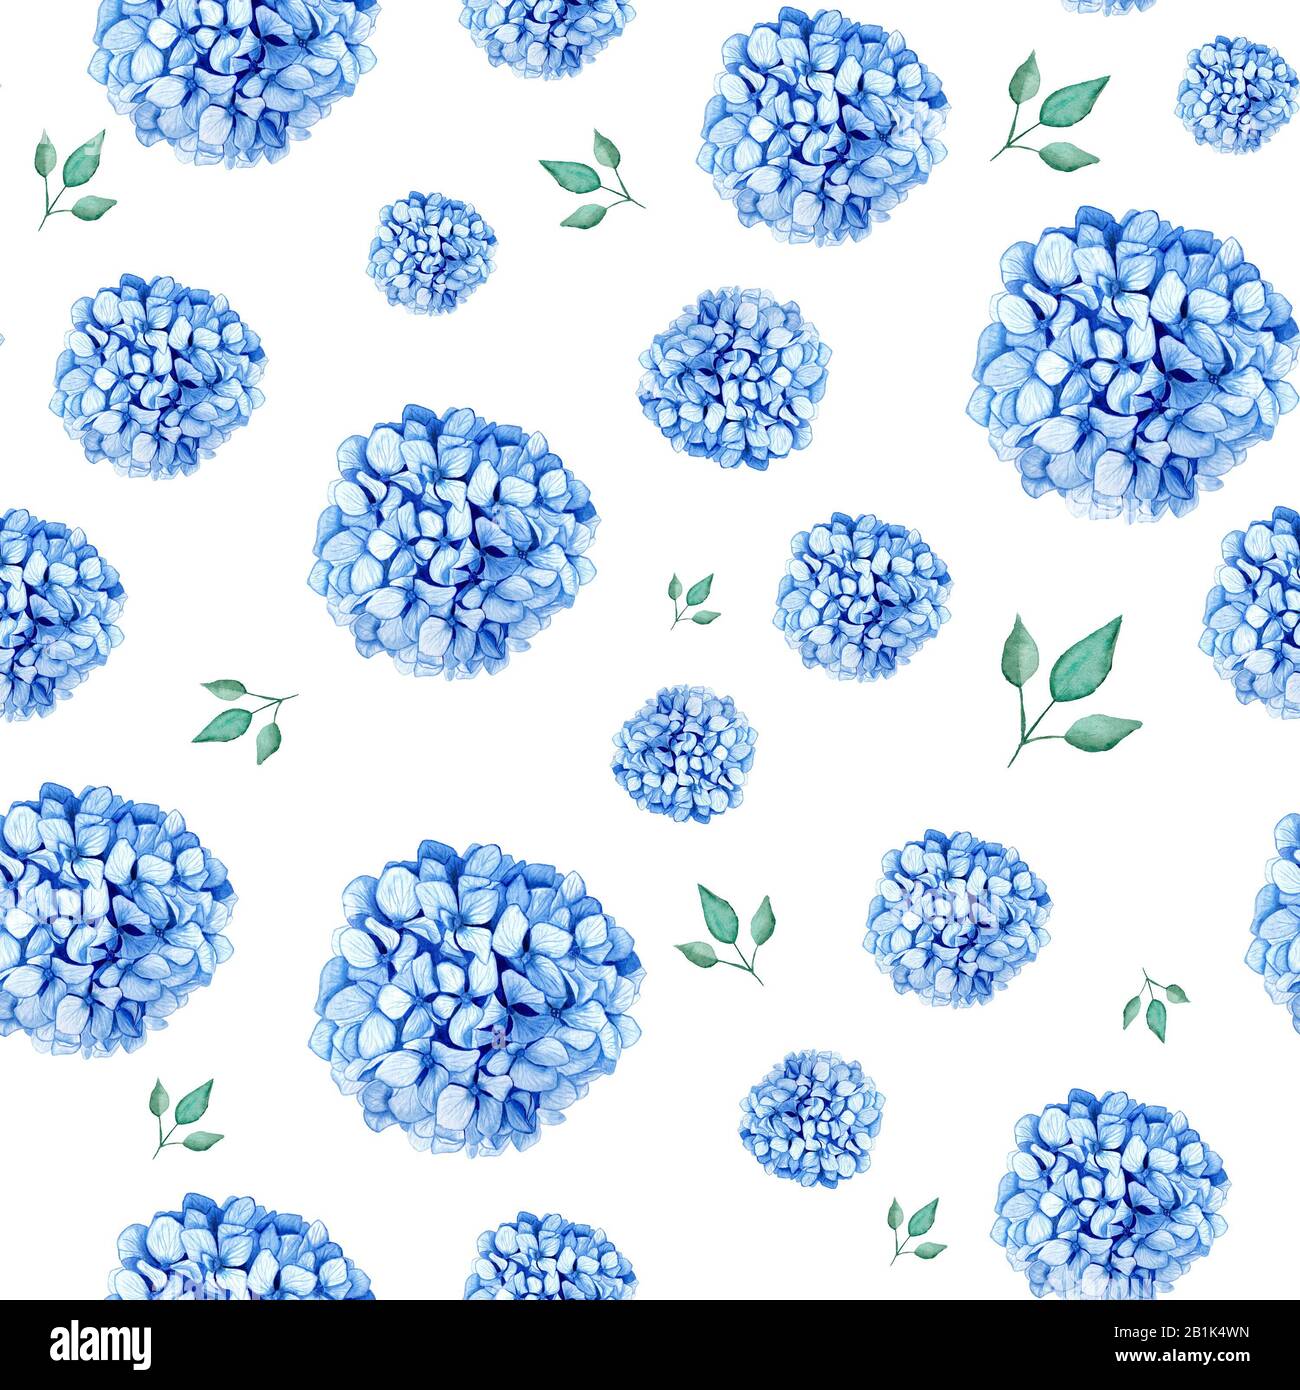 Hydrangea-Stamm-Aquarellzeichnung. Blaue Sommerblumen isoliert auf einem weißen, nahtlosen Hintergrund. Für Postkarten, Drucke und Notepad-Design Stockfoto